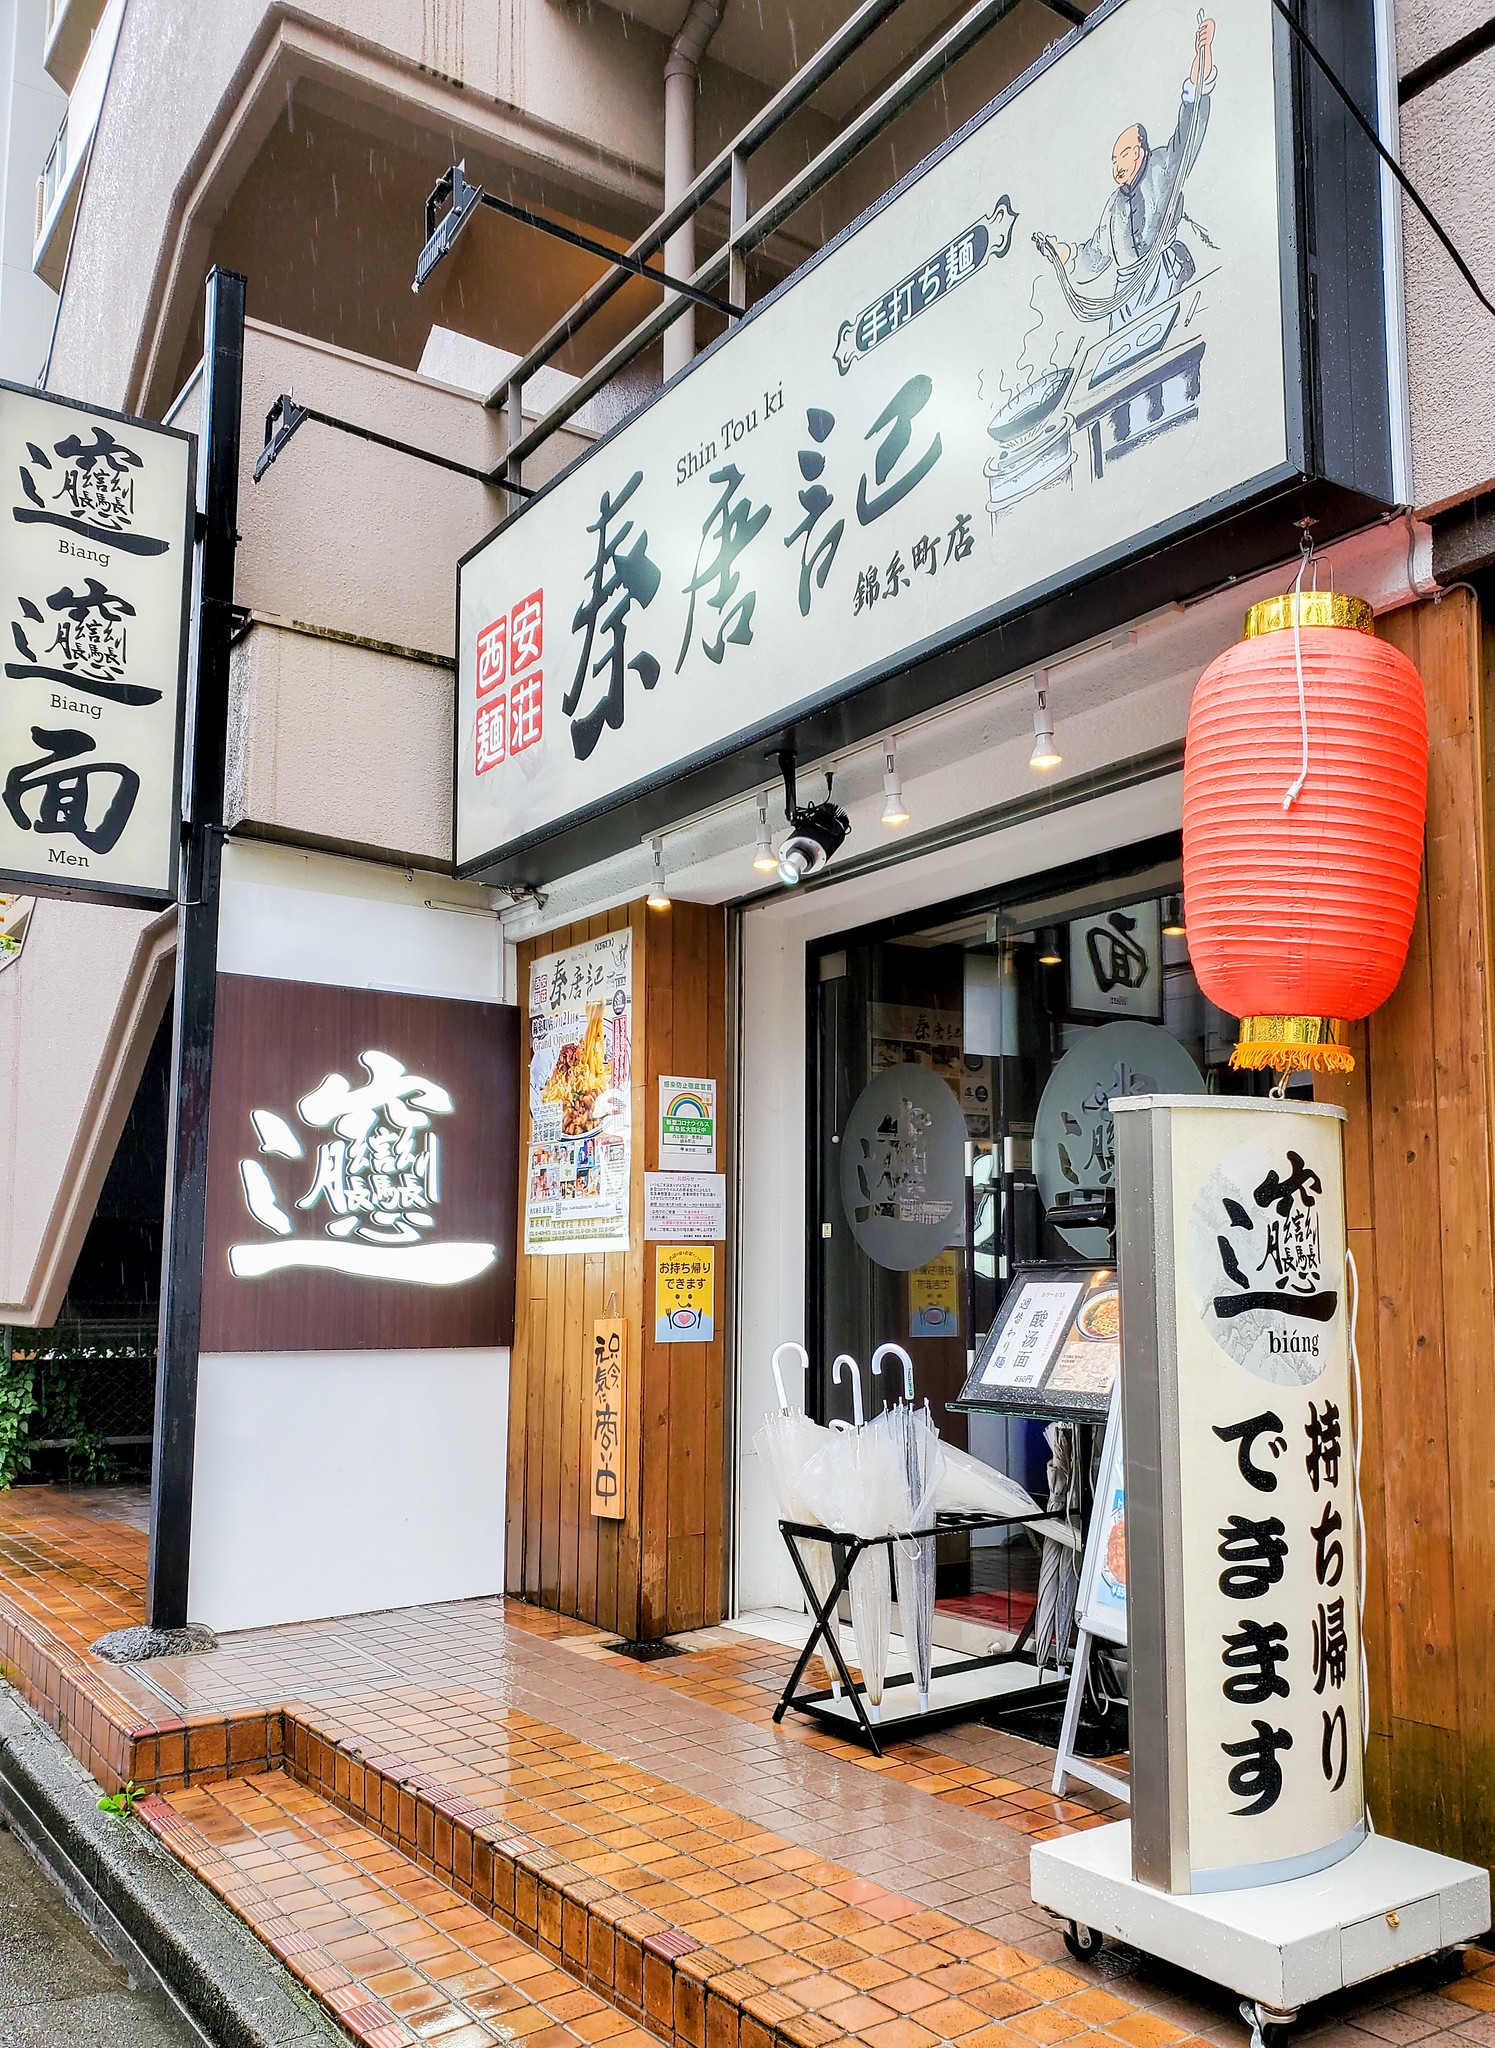 ビャンビャン麺食べてきました 西安麺荘 秦唐記 錦糸町店